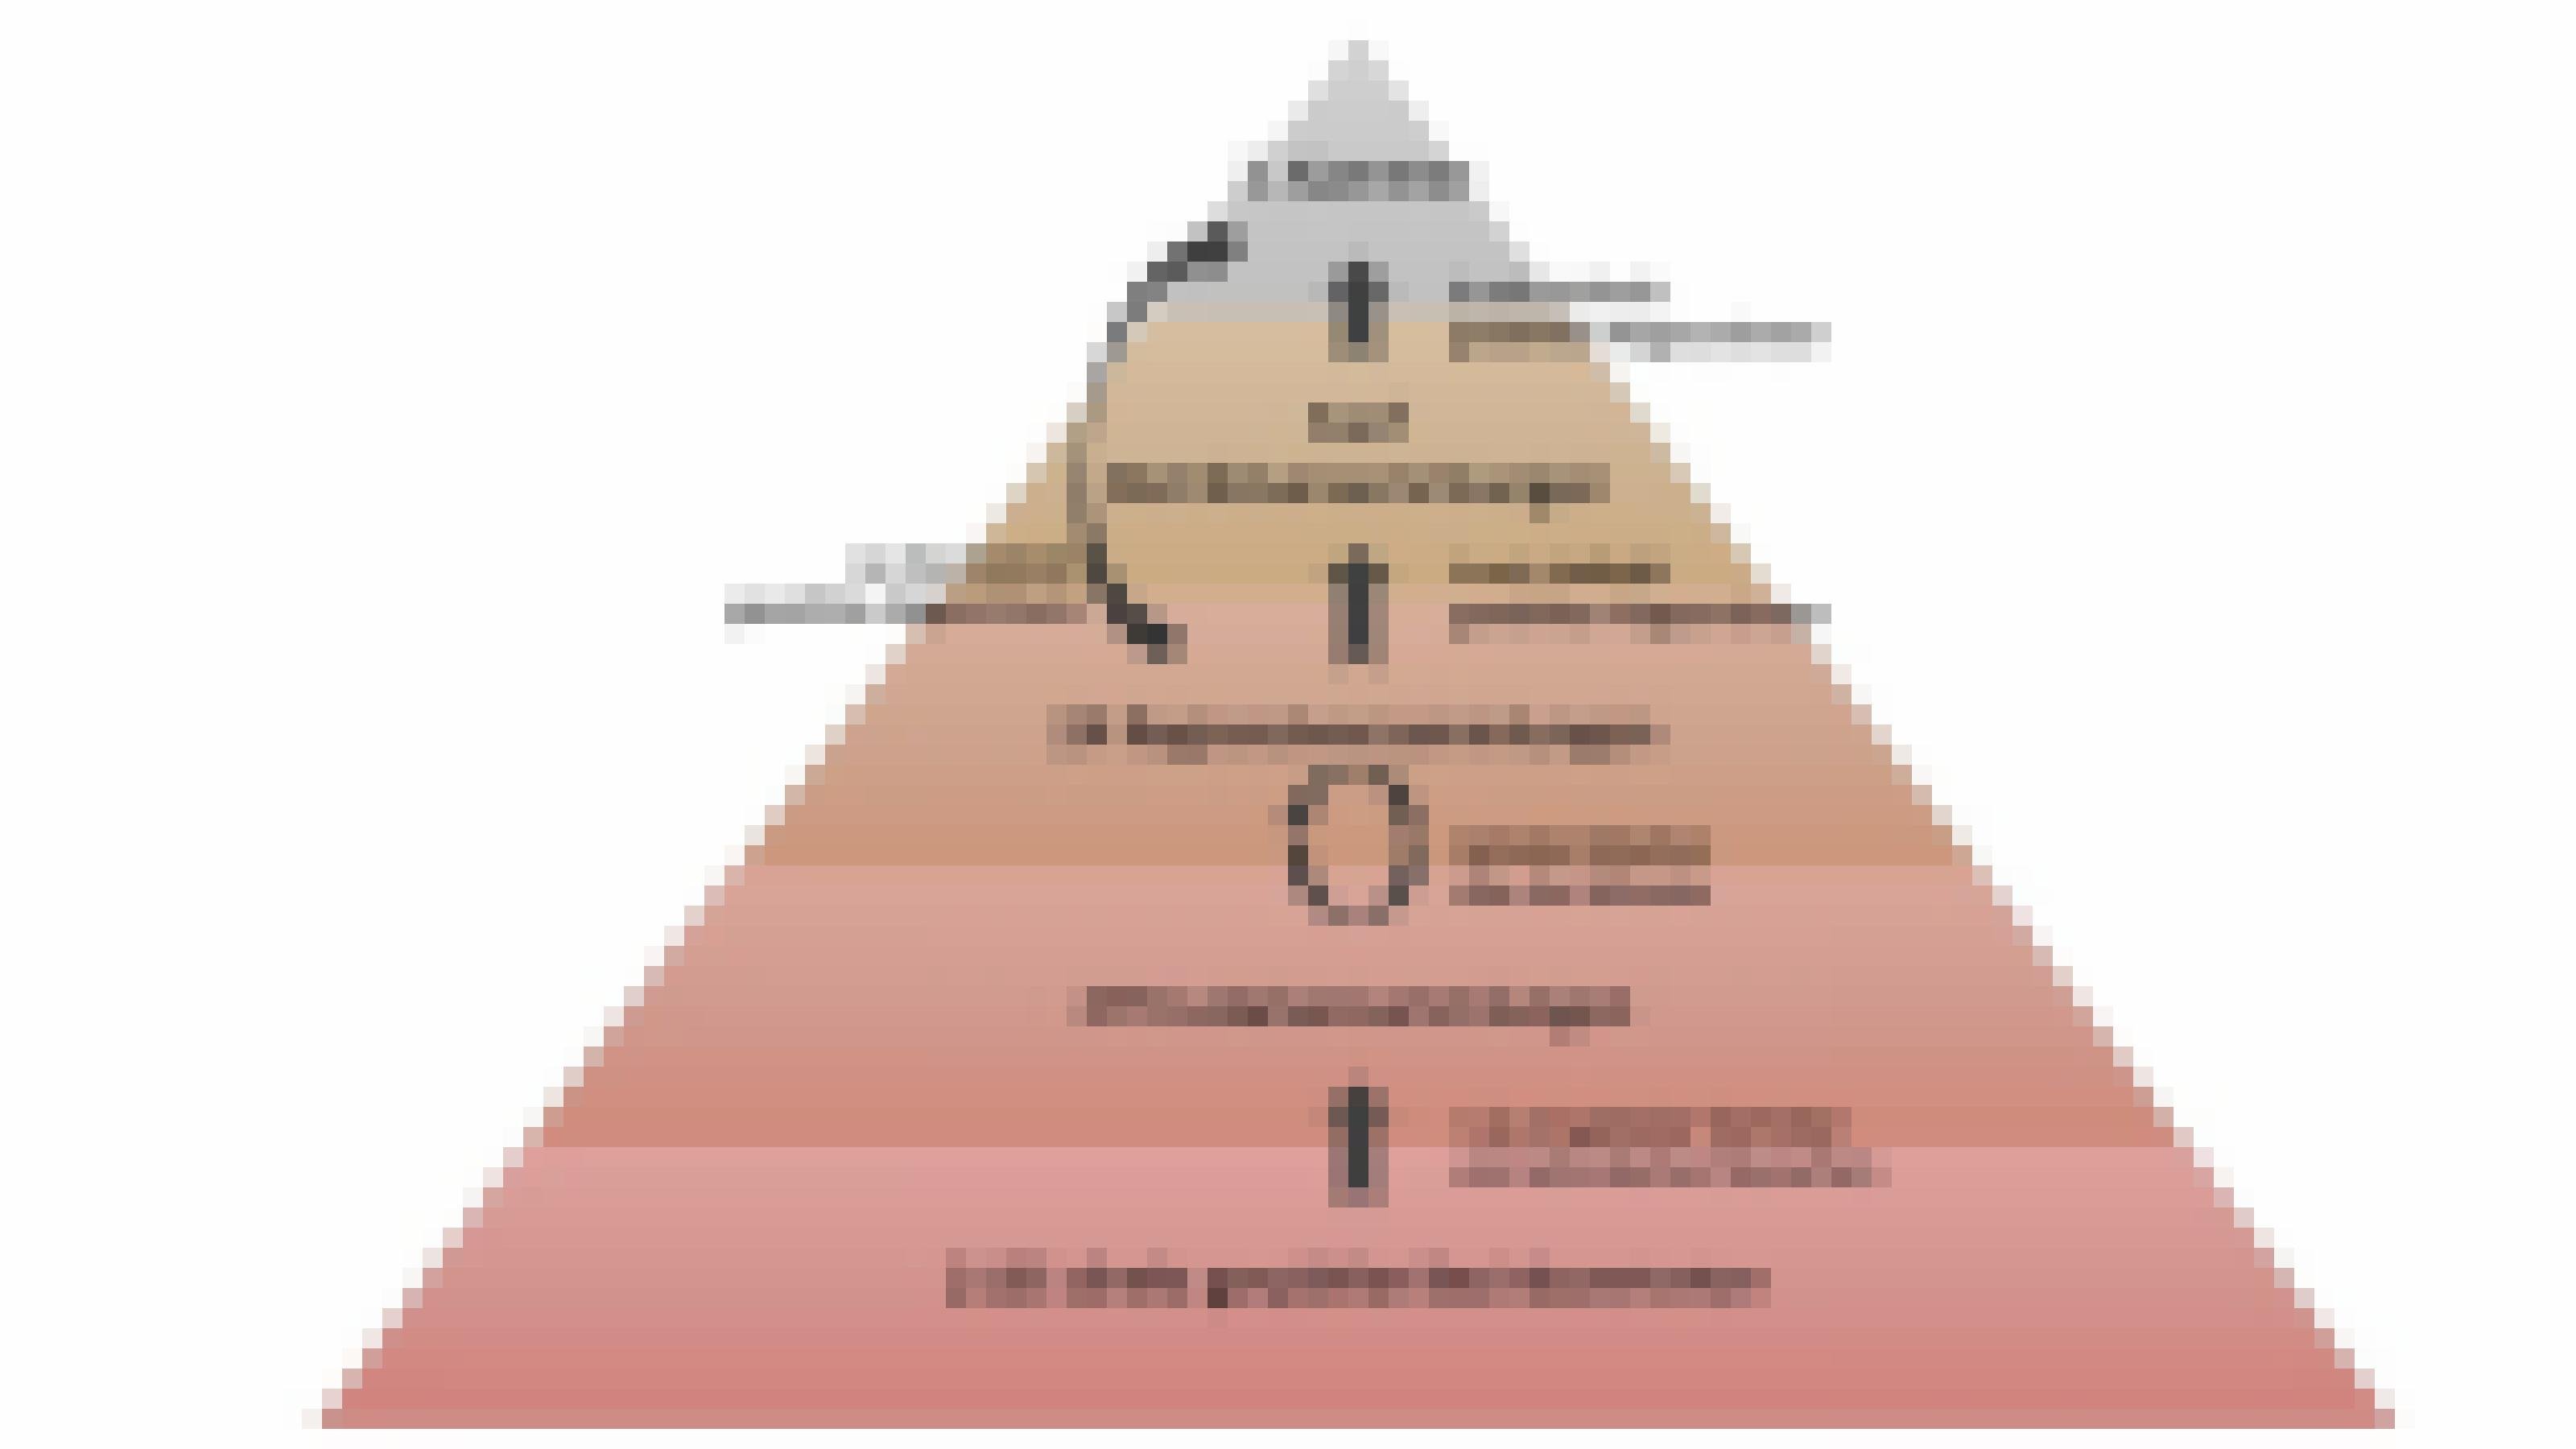 Eine Pyramide die schematisch das Wahlsystem darstellt